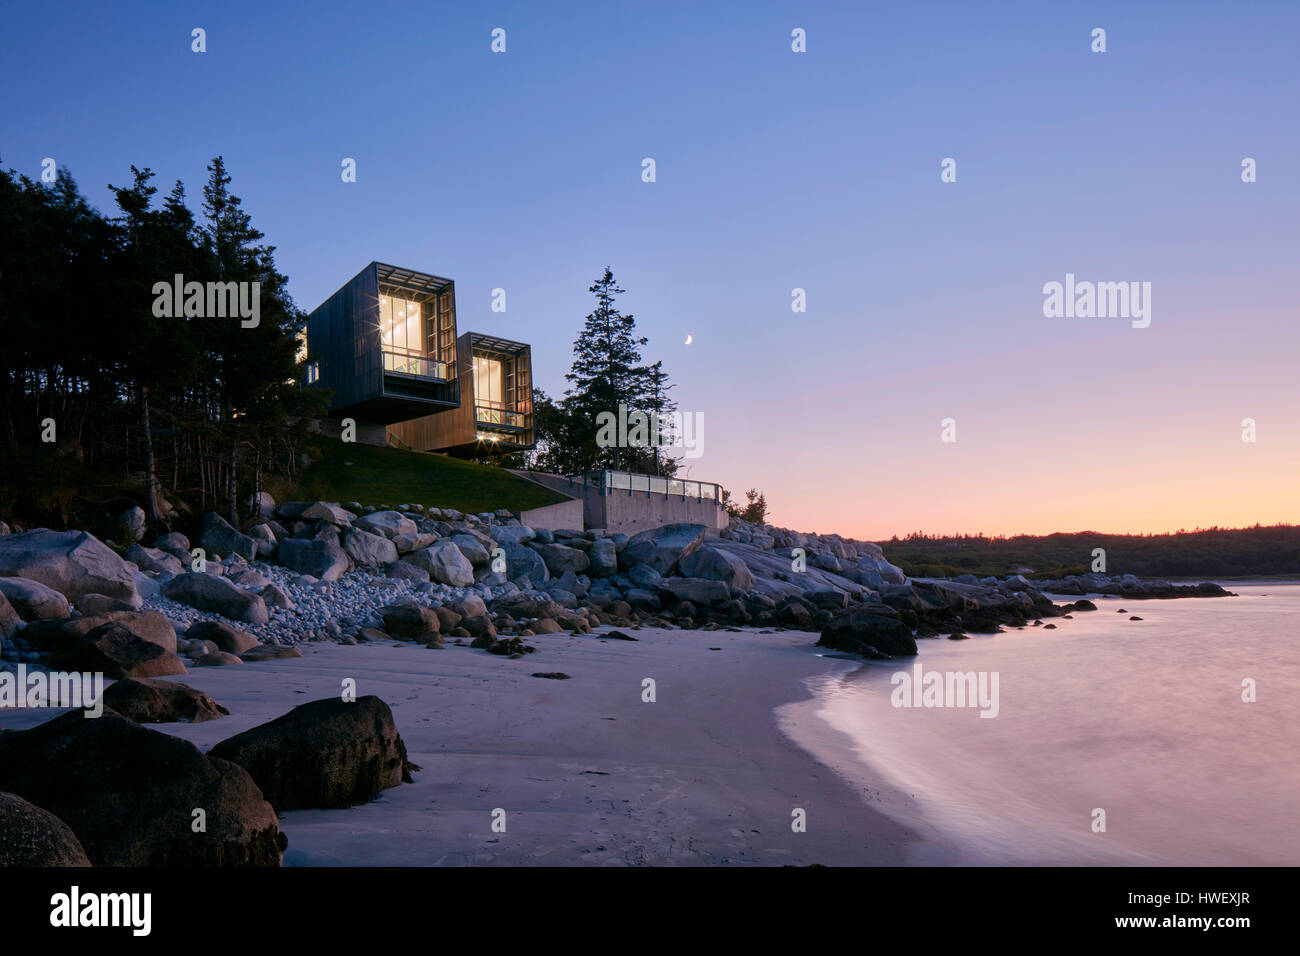 Le crépuscule. Deux Hull House, Halifax, Canada. MacKay-Lyons Sweetapple : Architecte, 2012. Banque D'Images